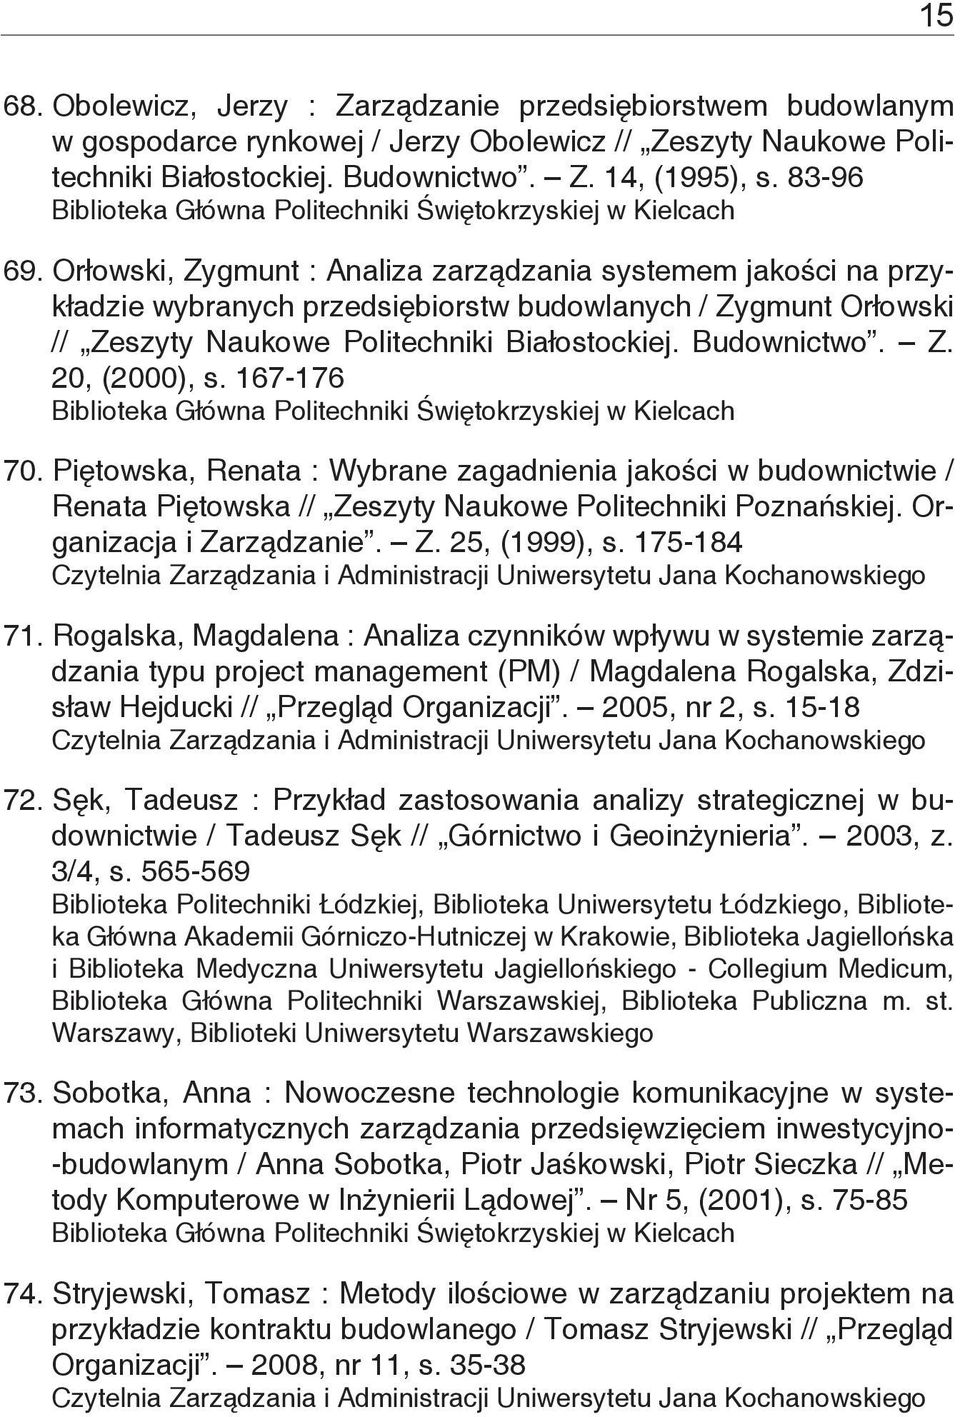 167-176 70. Piętowska, Renata : Wybrane zagadnienia jakości w budownictwie / Renata Piętowska // Zeszyty Naukowe Politechniki Poznańskiej. Organizacja i Zarządzanie. Z. 25, (1999), s. 175-184 71.